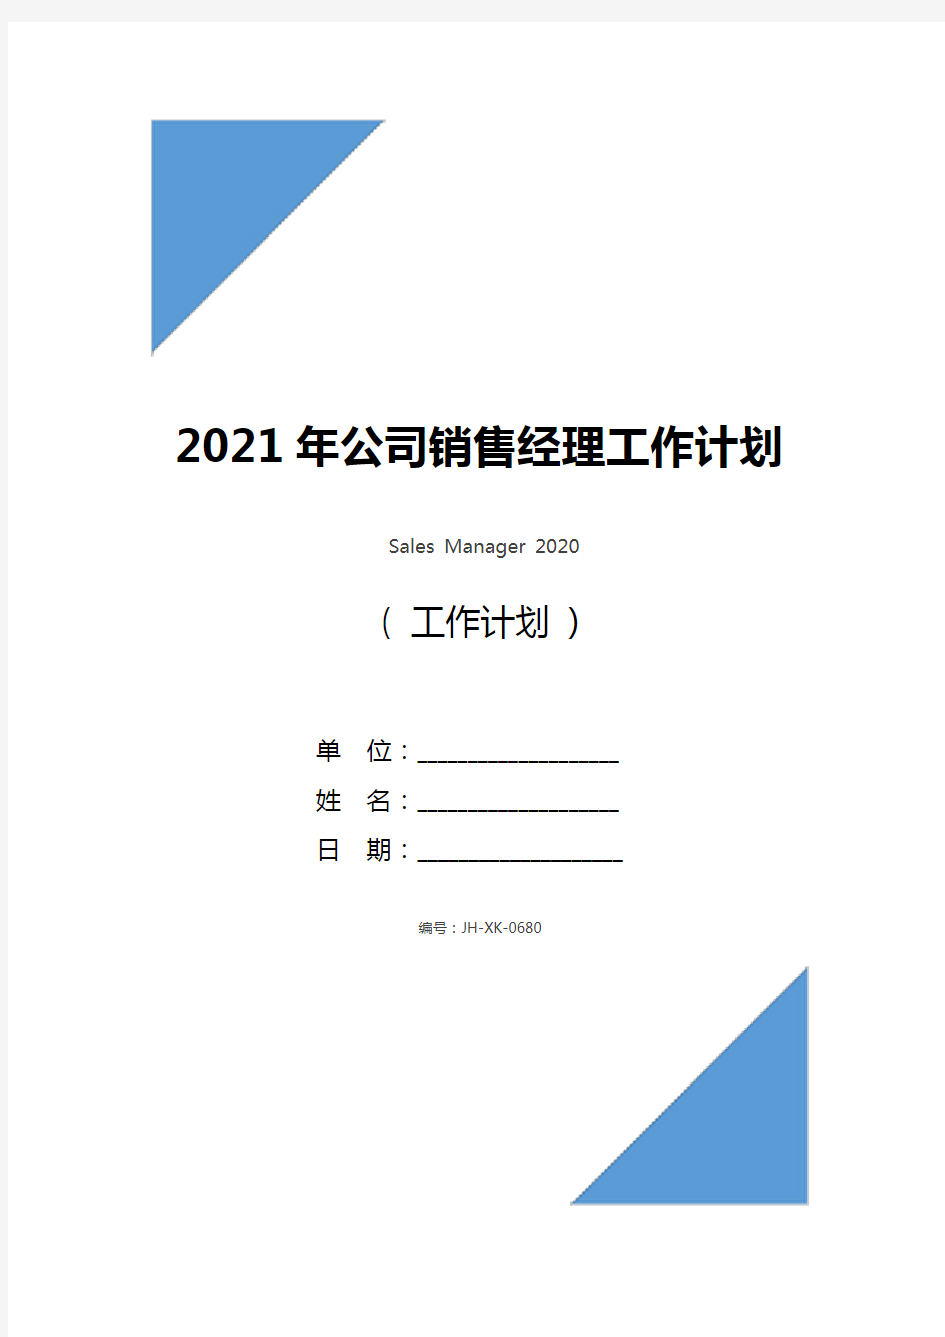 2021年公司销售经理工作计划(通用版)